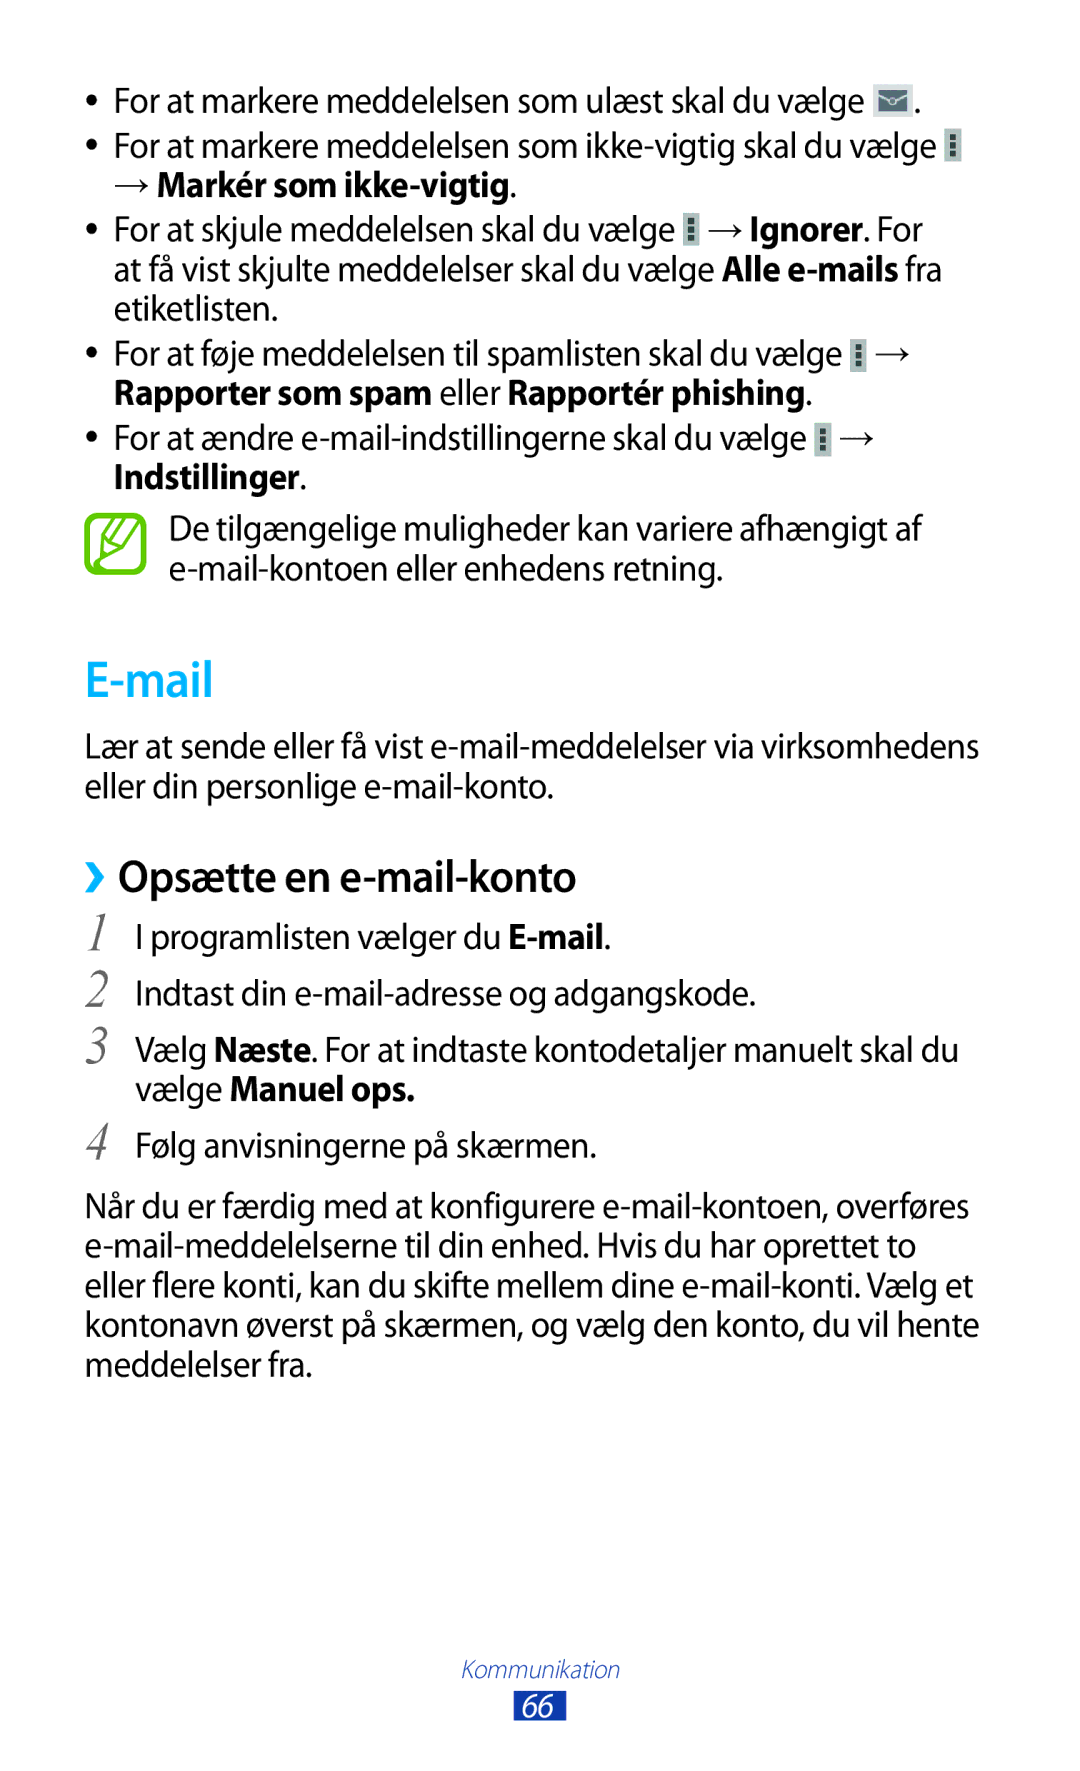 Samsung GT-P3100TSANEE, GT-P3100ZWANEE, GT-P3100GRANEE manual Mail, ››Opsætte en e-mail-konto, → Markér som ikke-vigtig 